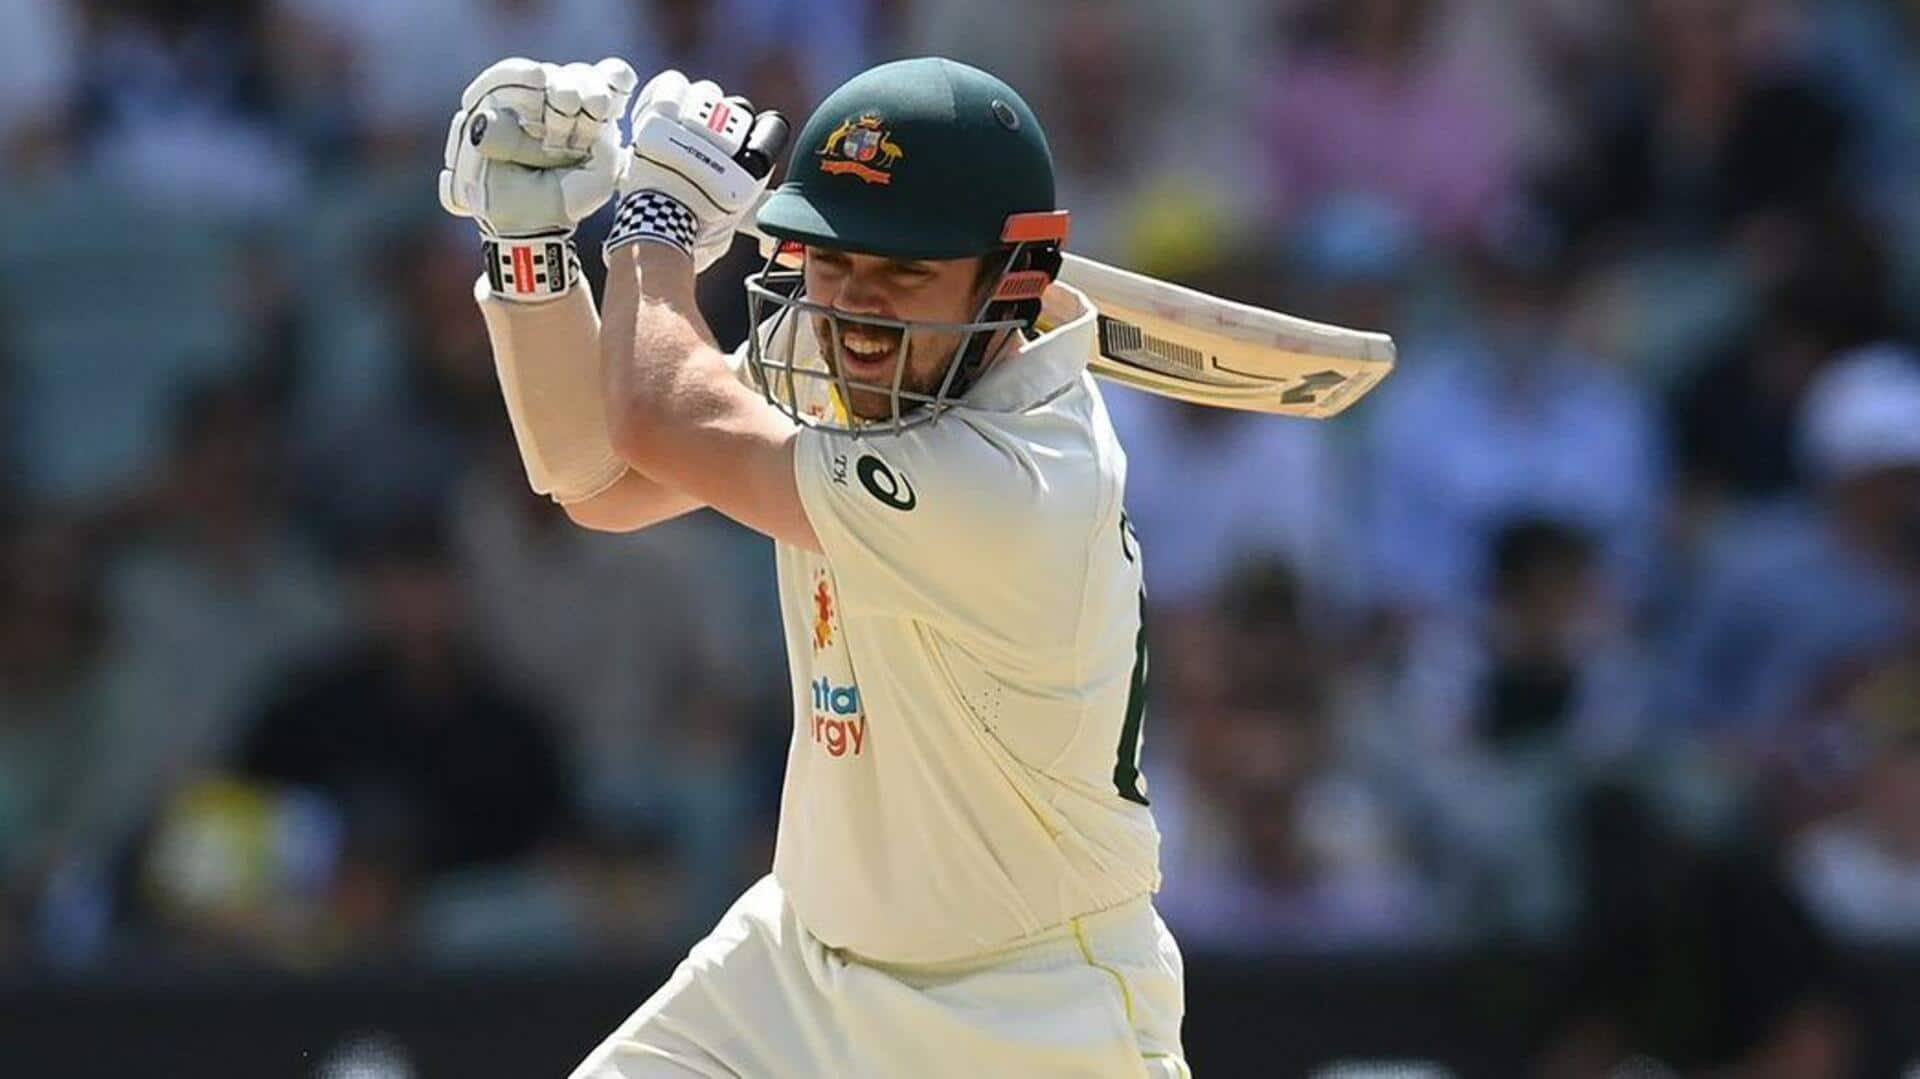 भारत बनाम ऑस्ट्रेलिया: ट्रेविस हेड ने भारत के खिलाफ बनाया अपना सर्वश्रेष्ठ स्कोर, शतक से चूके